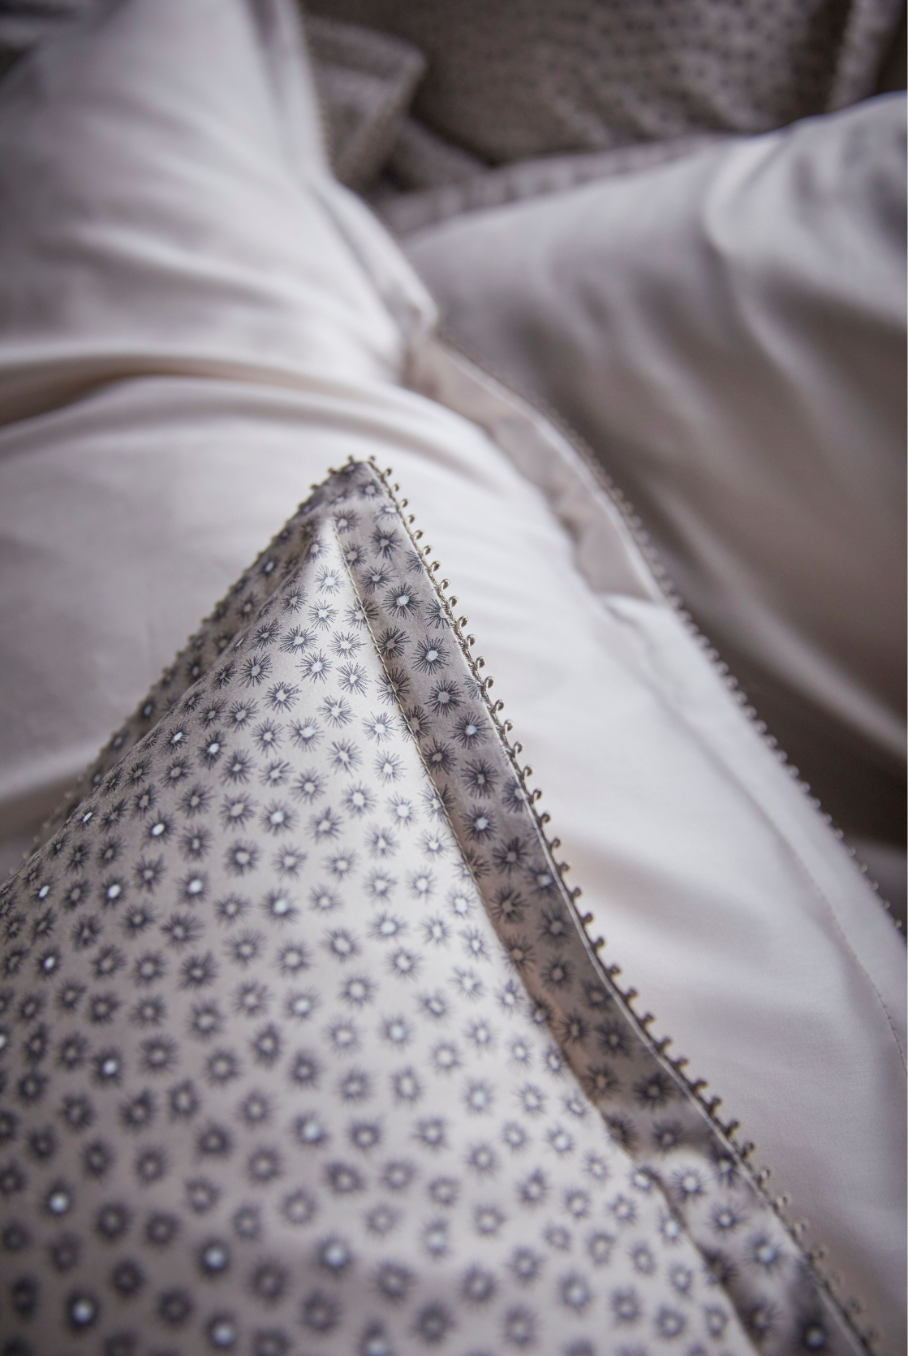 à la belle étoile pillowcases & shams by alexandre turpault on adorn.house